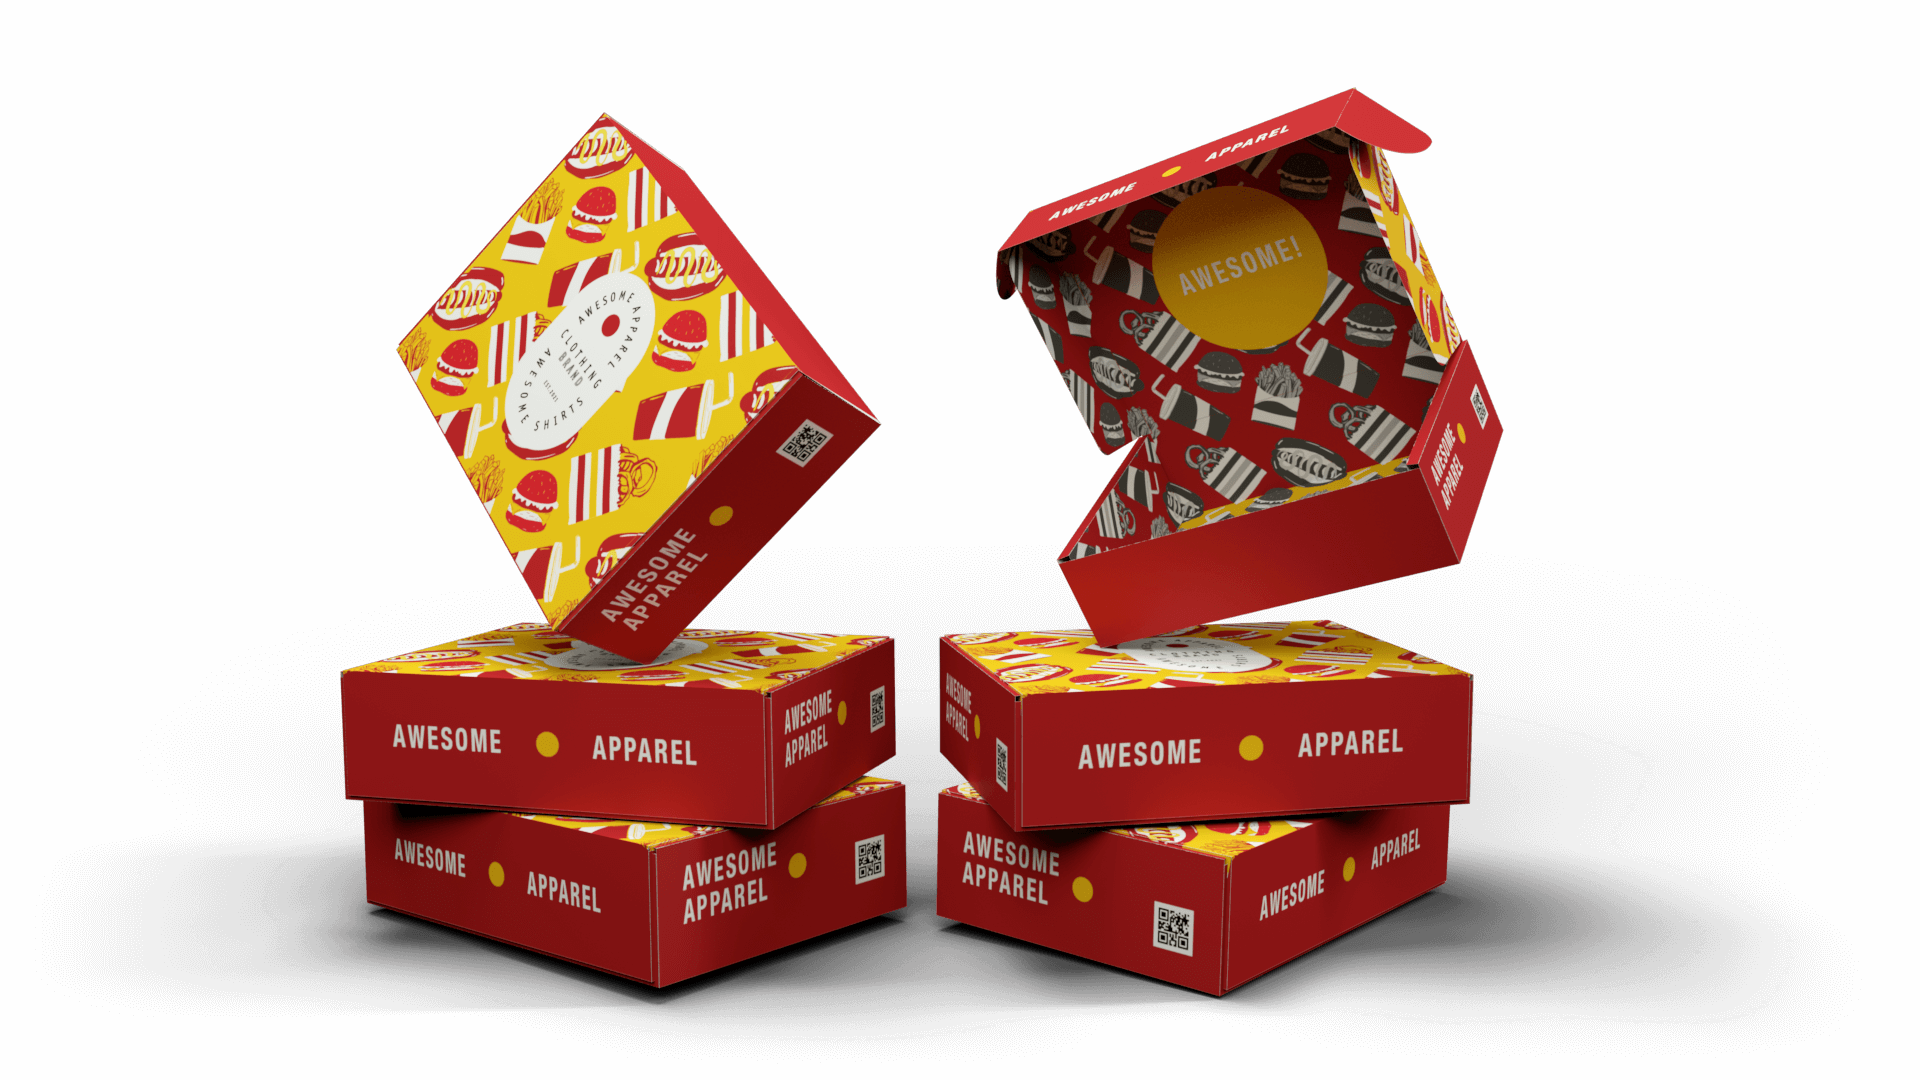 Design Custom Printed Boxes |